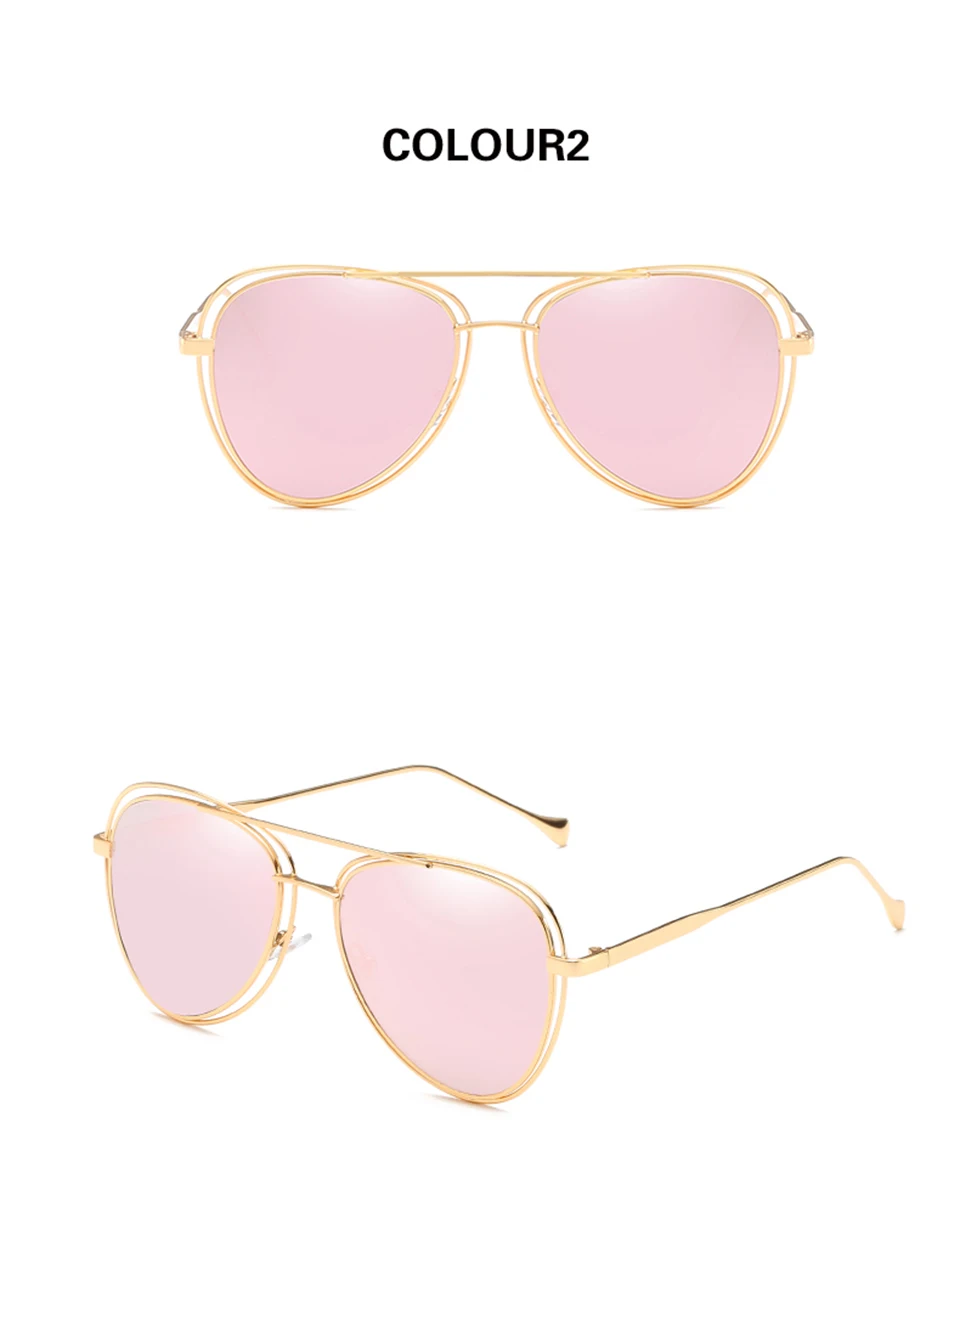 GY Улитка Новый стильный двойной круг полые очки, для мужчин и Для Женщин универсальный солнцезащитные очки металлический каркас Красочные